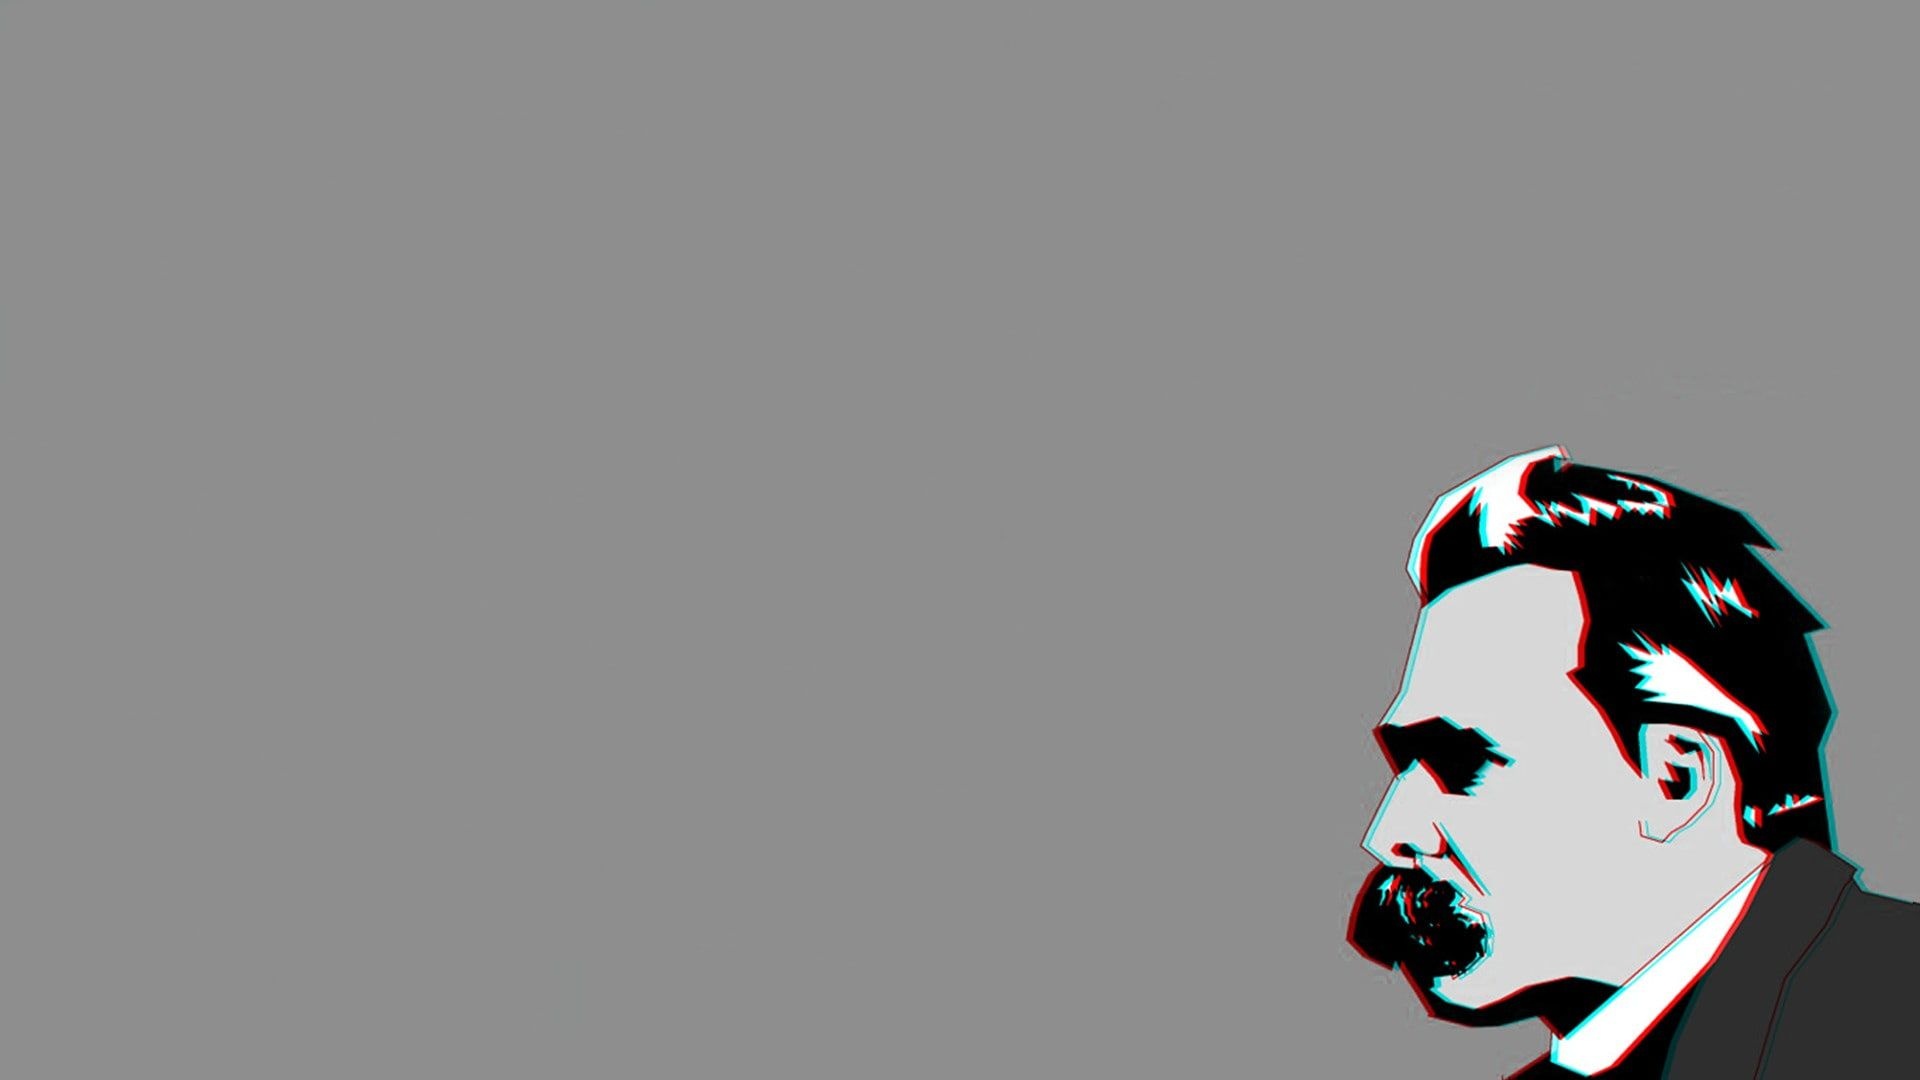 Friedrich Nietzsche philosophers, Chromatic aberration, Nietzsche wallpaper, Desktop wallpaper, 1920x1080 Full HD Desktop